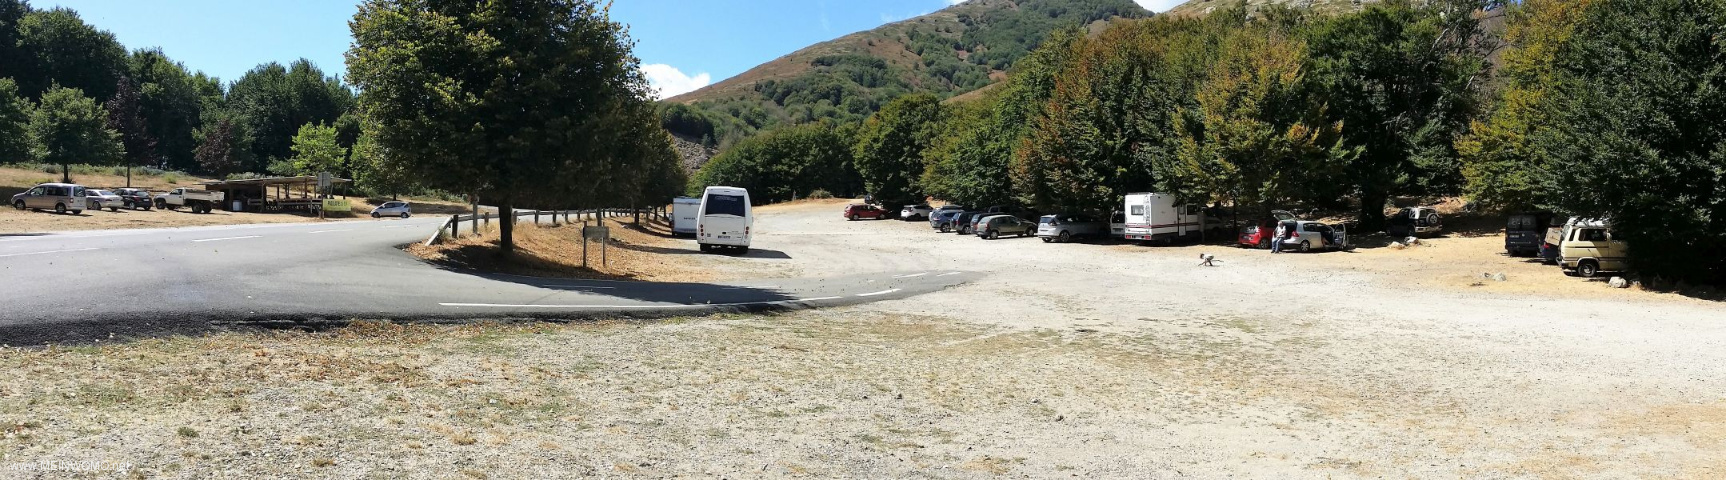  Parking at Col de Vizzavona